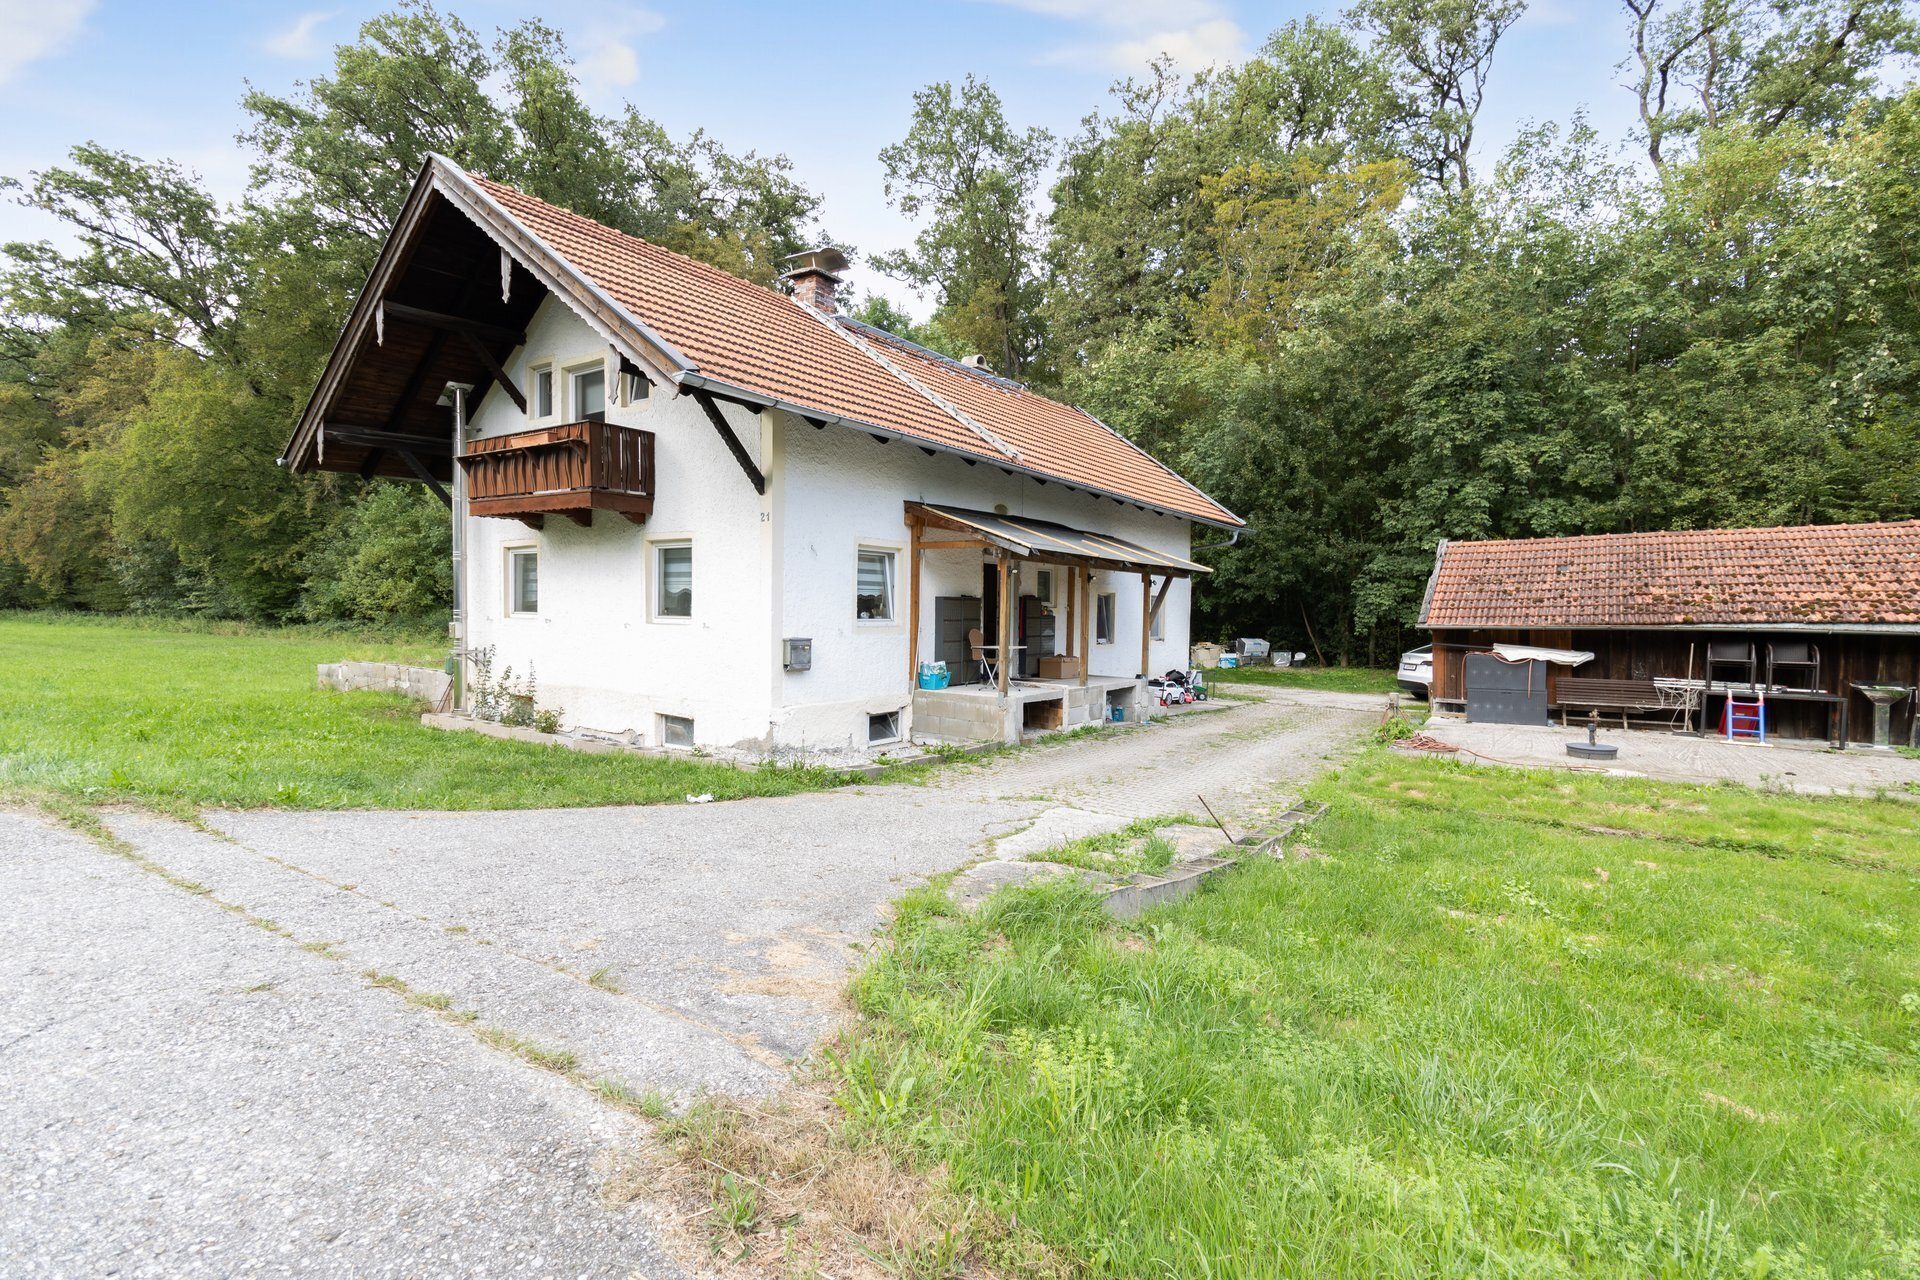 Immobilienangebot - Saaldorf-Surheim - Alle - Einfamilienhaus mit großzügiger landwirtschaftlicher Nutzfläche